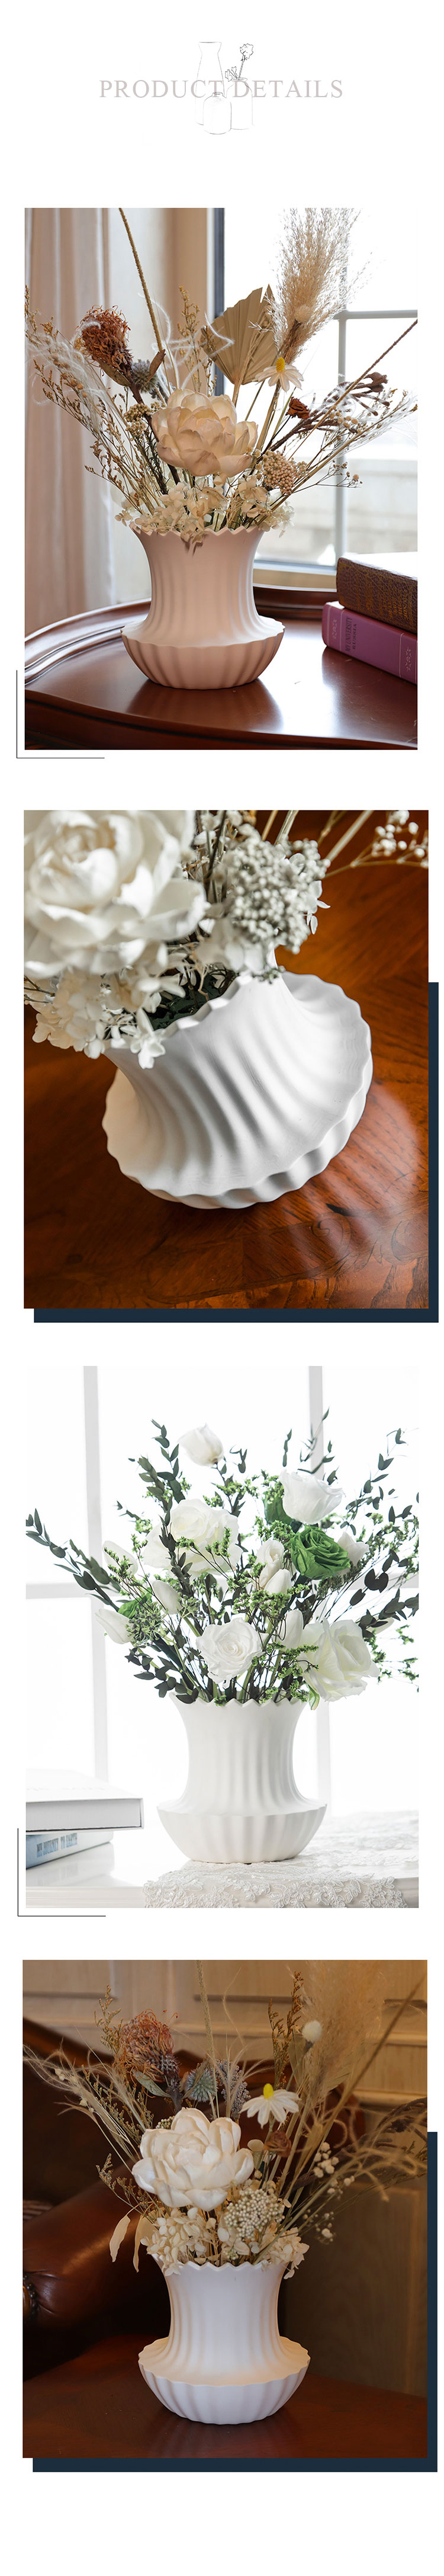 Jellyfish shape ceramic vase (4)